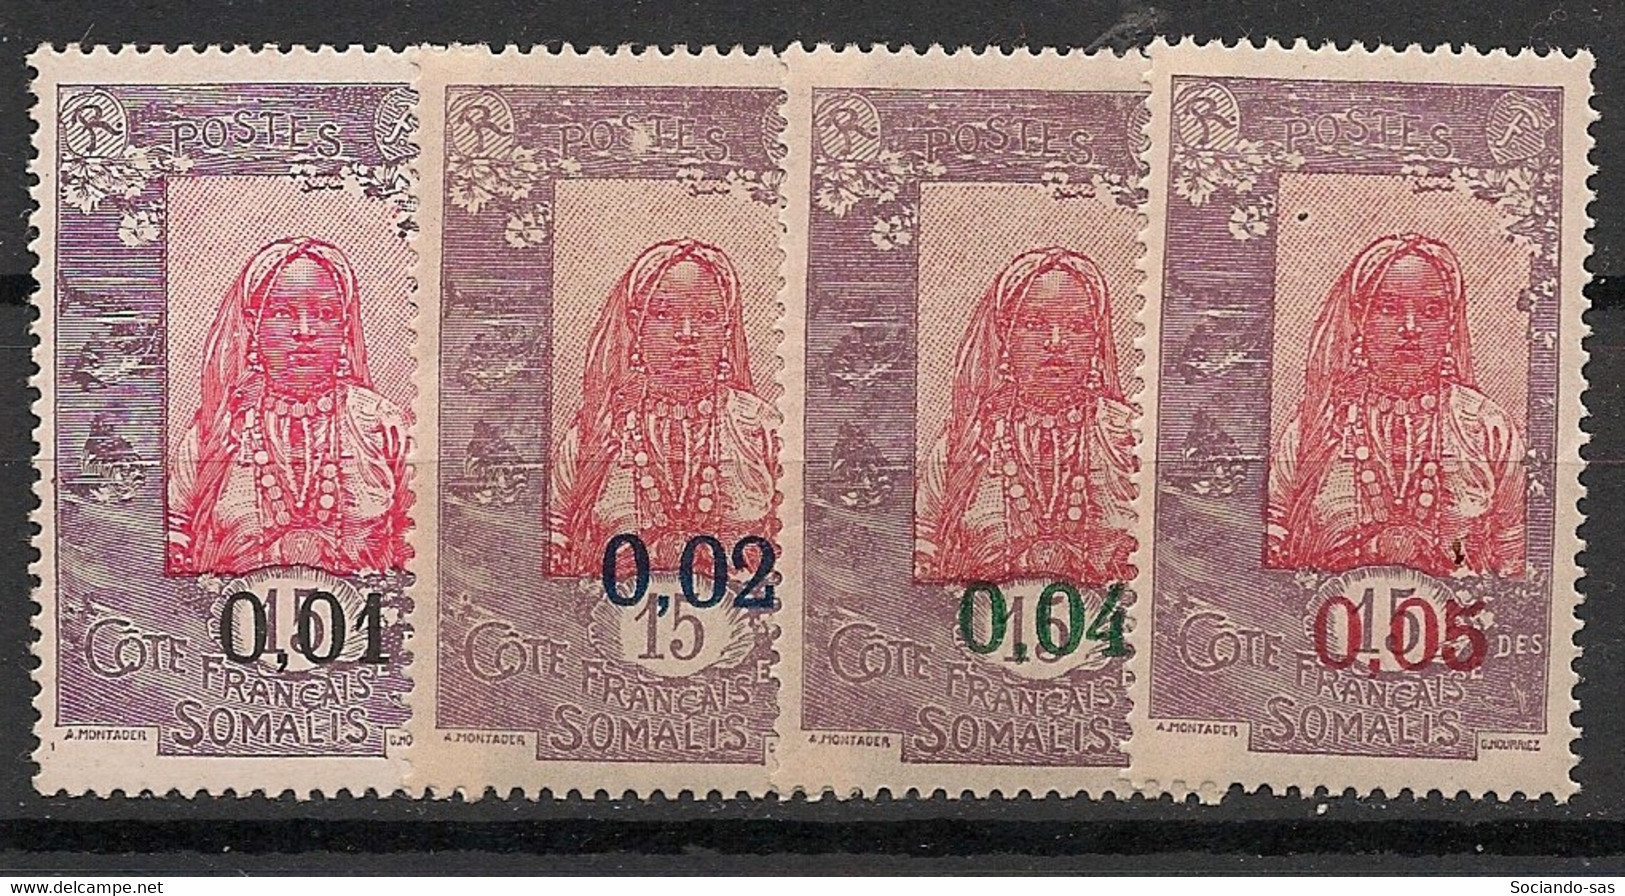 COTE DES SOMALIS - 1922 - N°YT. 108 à 111 - Série Complète - Neuf * / MH VF - Ongebruikt